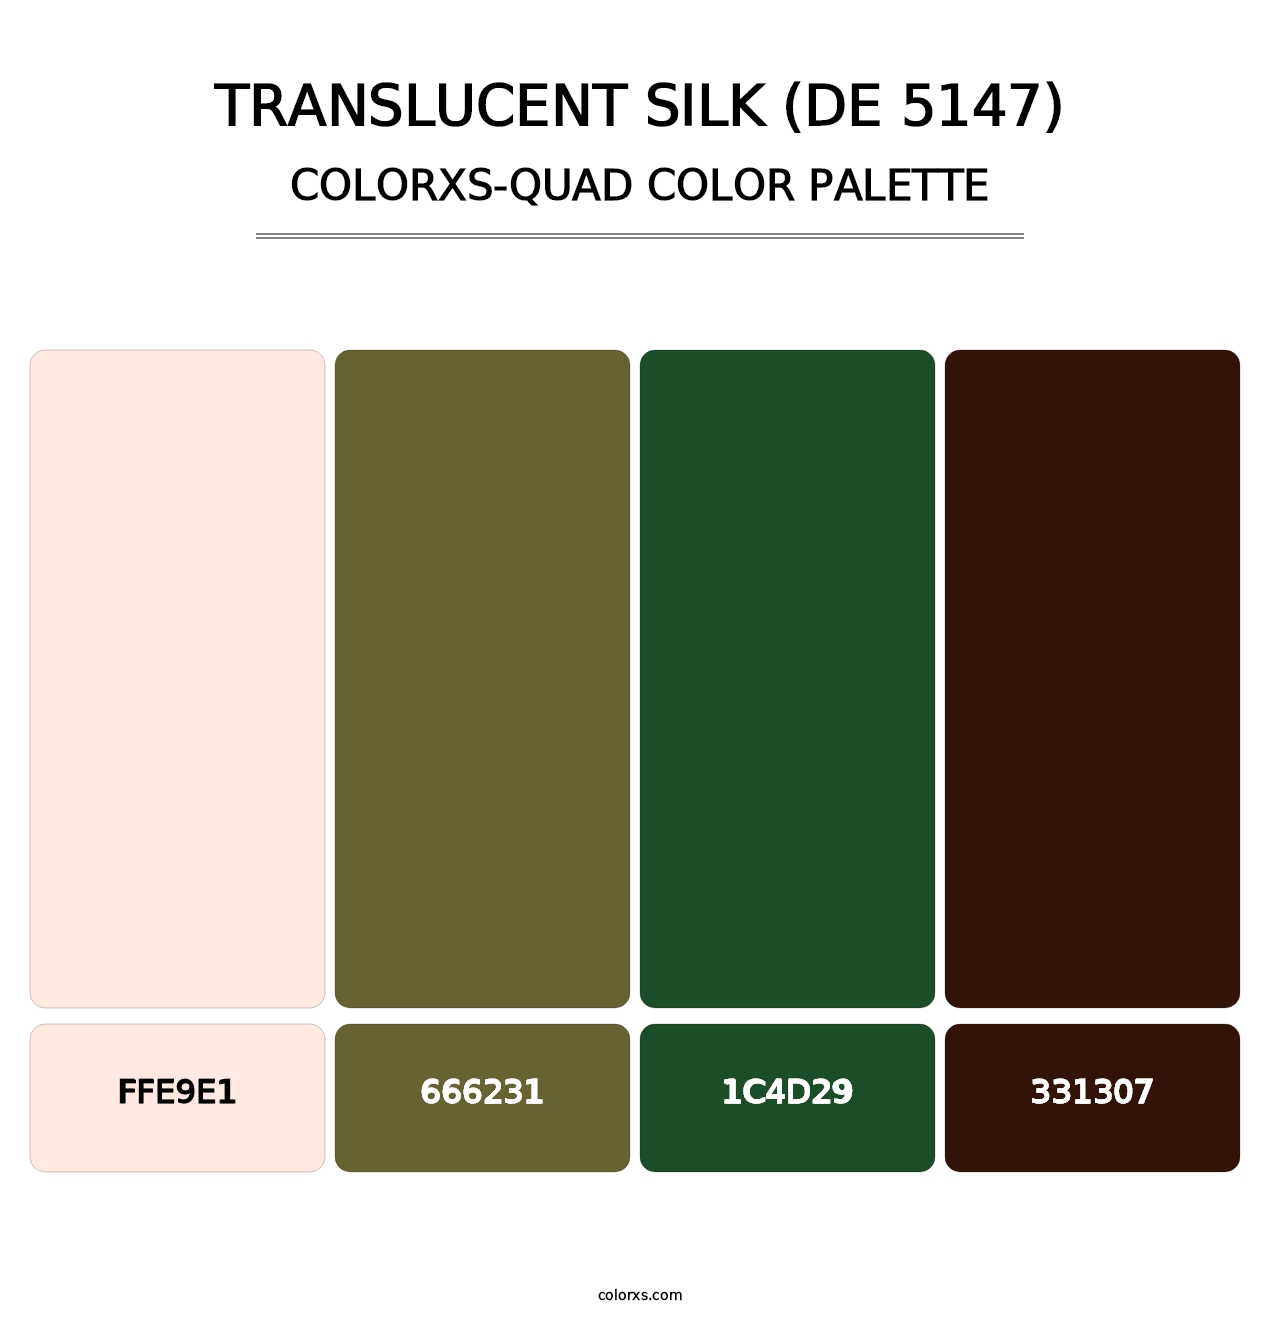 Translucent Silk (DE 5147) - Colorxs Quad Palette